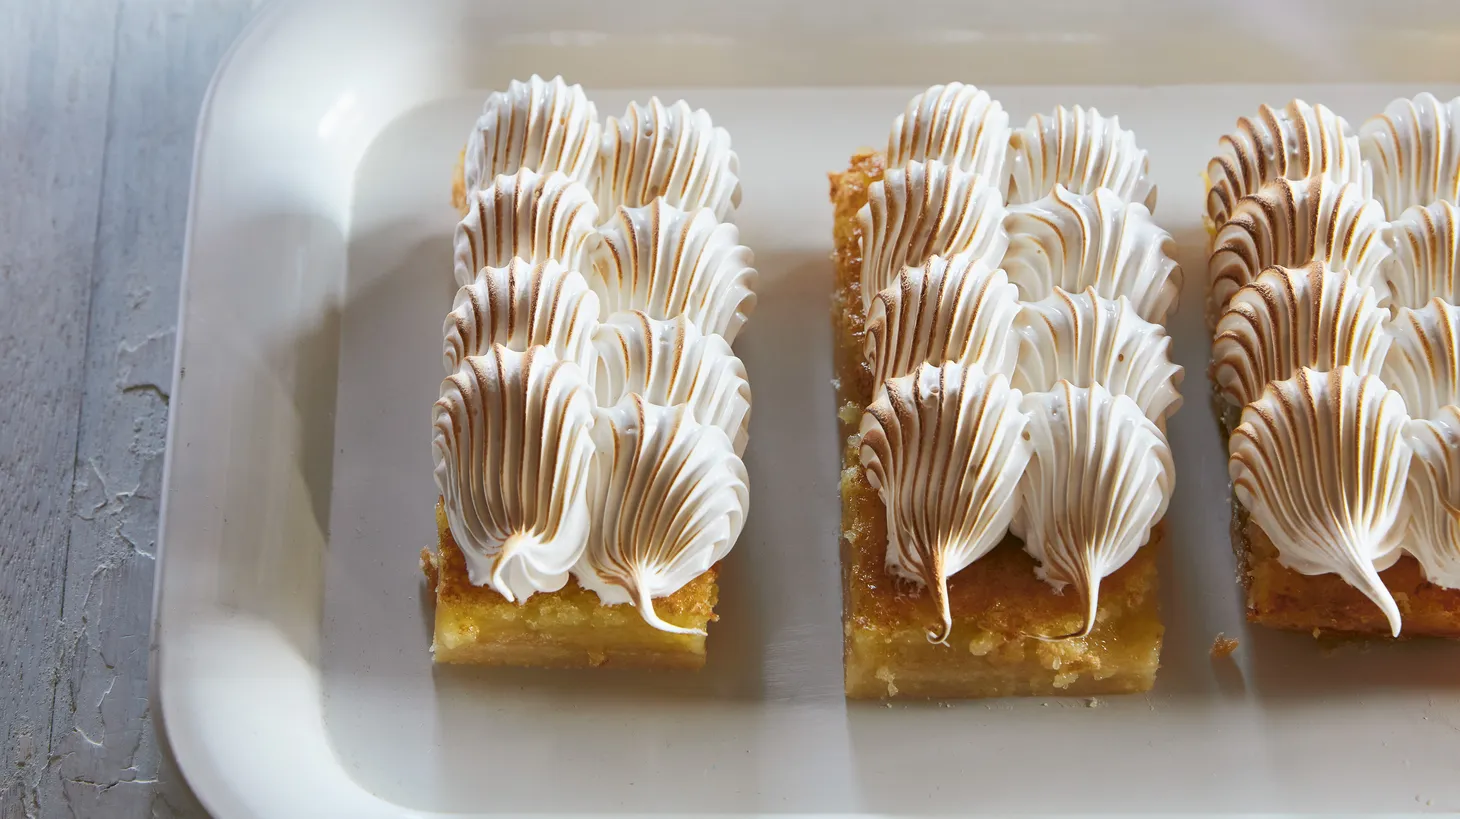 Lemon meringue pie bars get a torch in Chez Panisse alum Claire Ptak's latest cookbook.